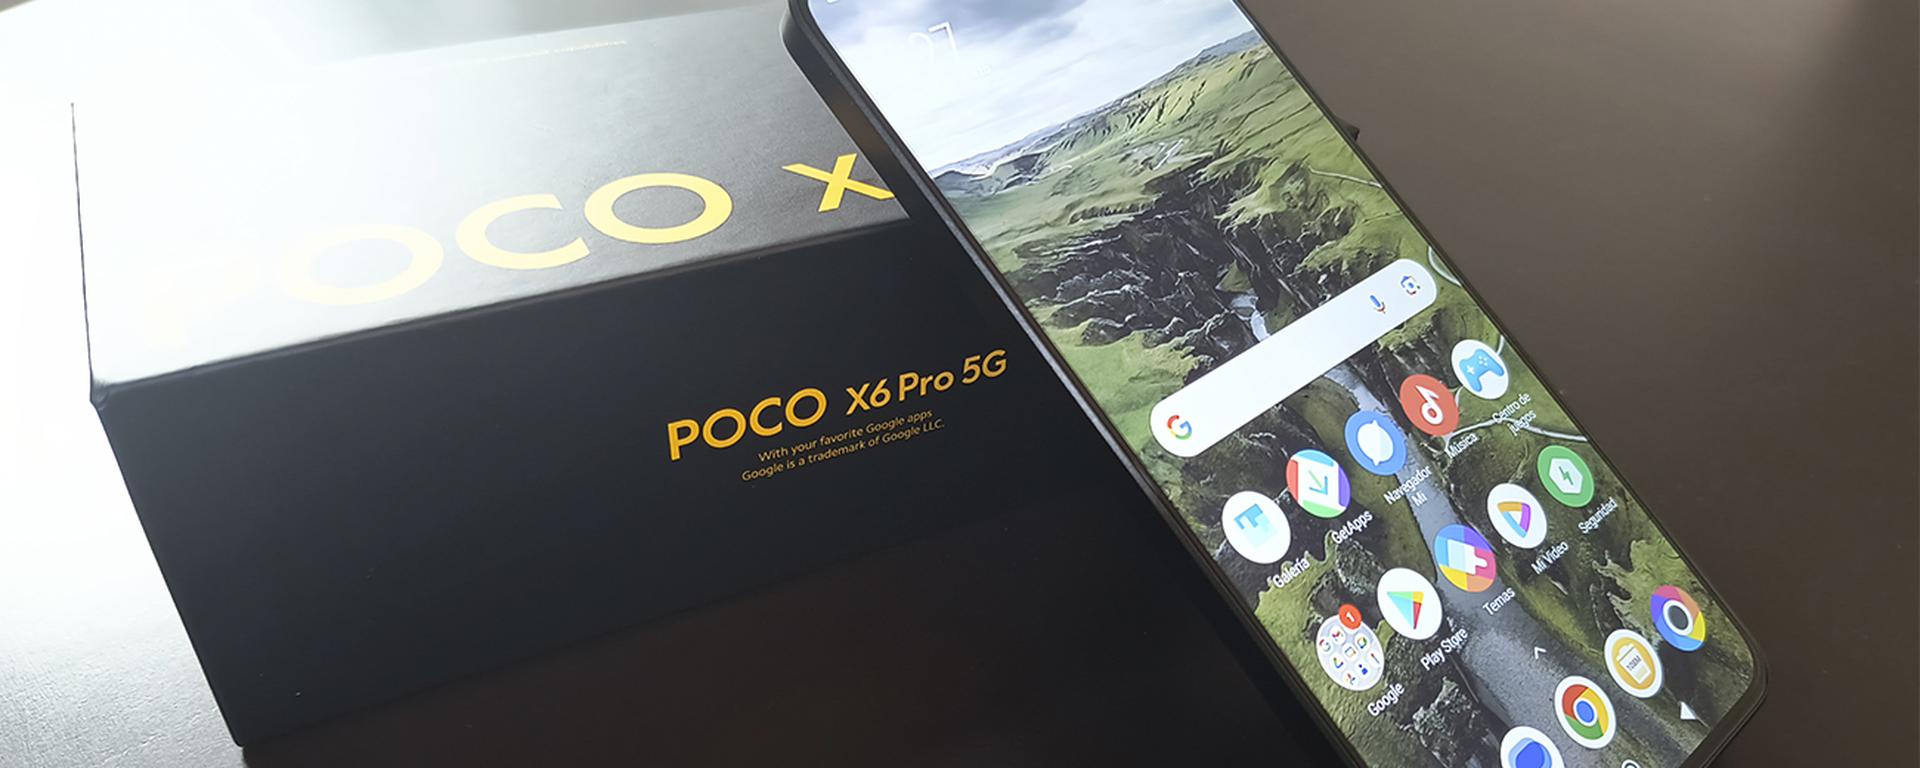 POCO X6 Pro: ¿será este smartphone el más potente de la gama media? | REVIEW